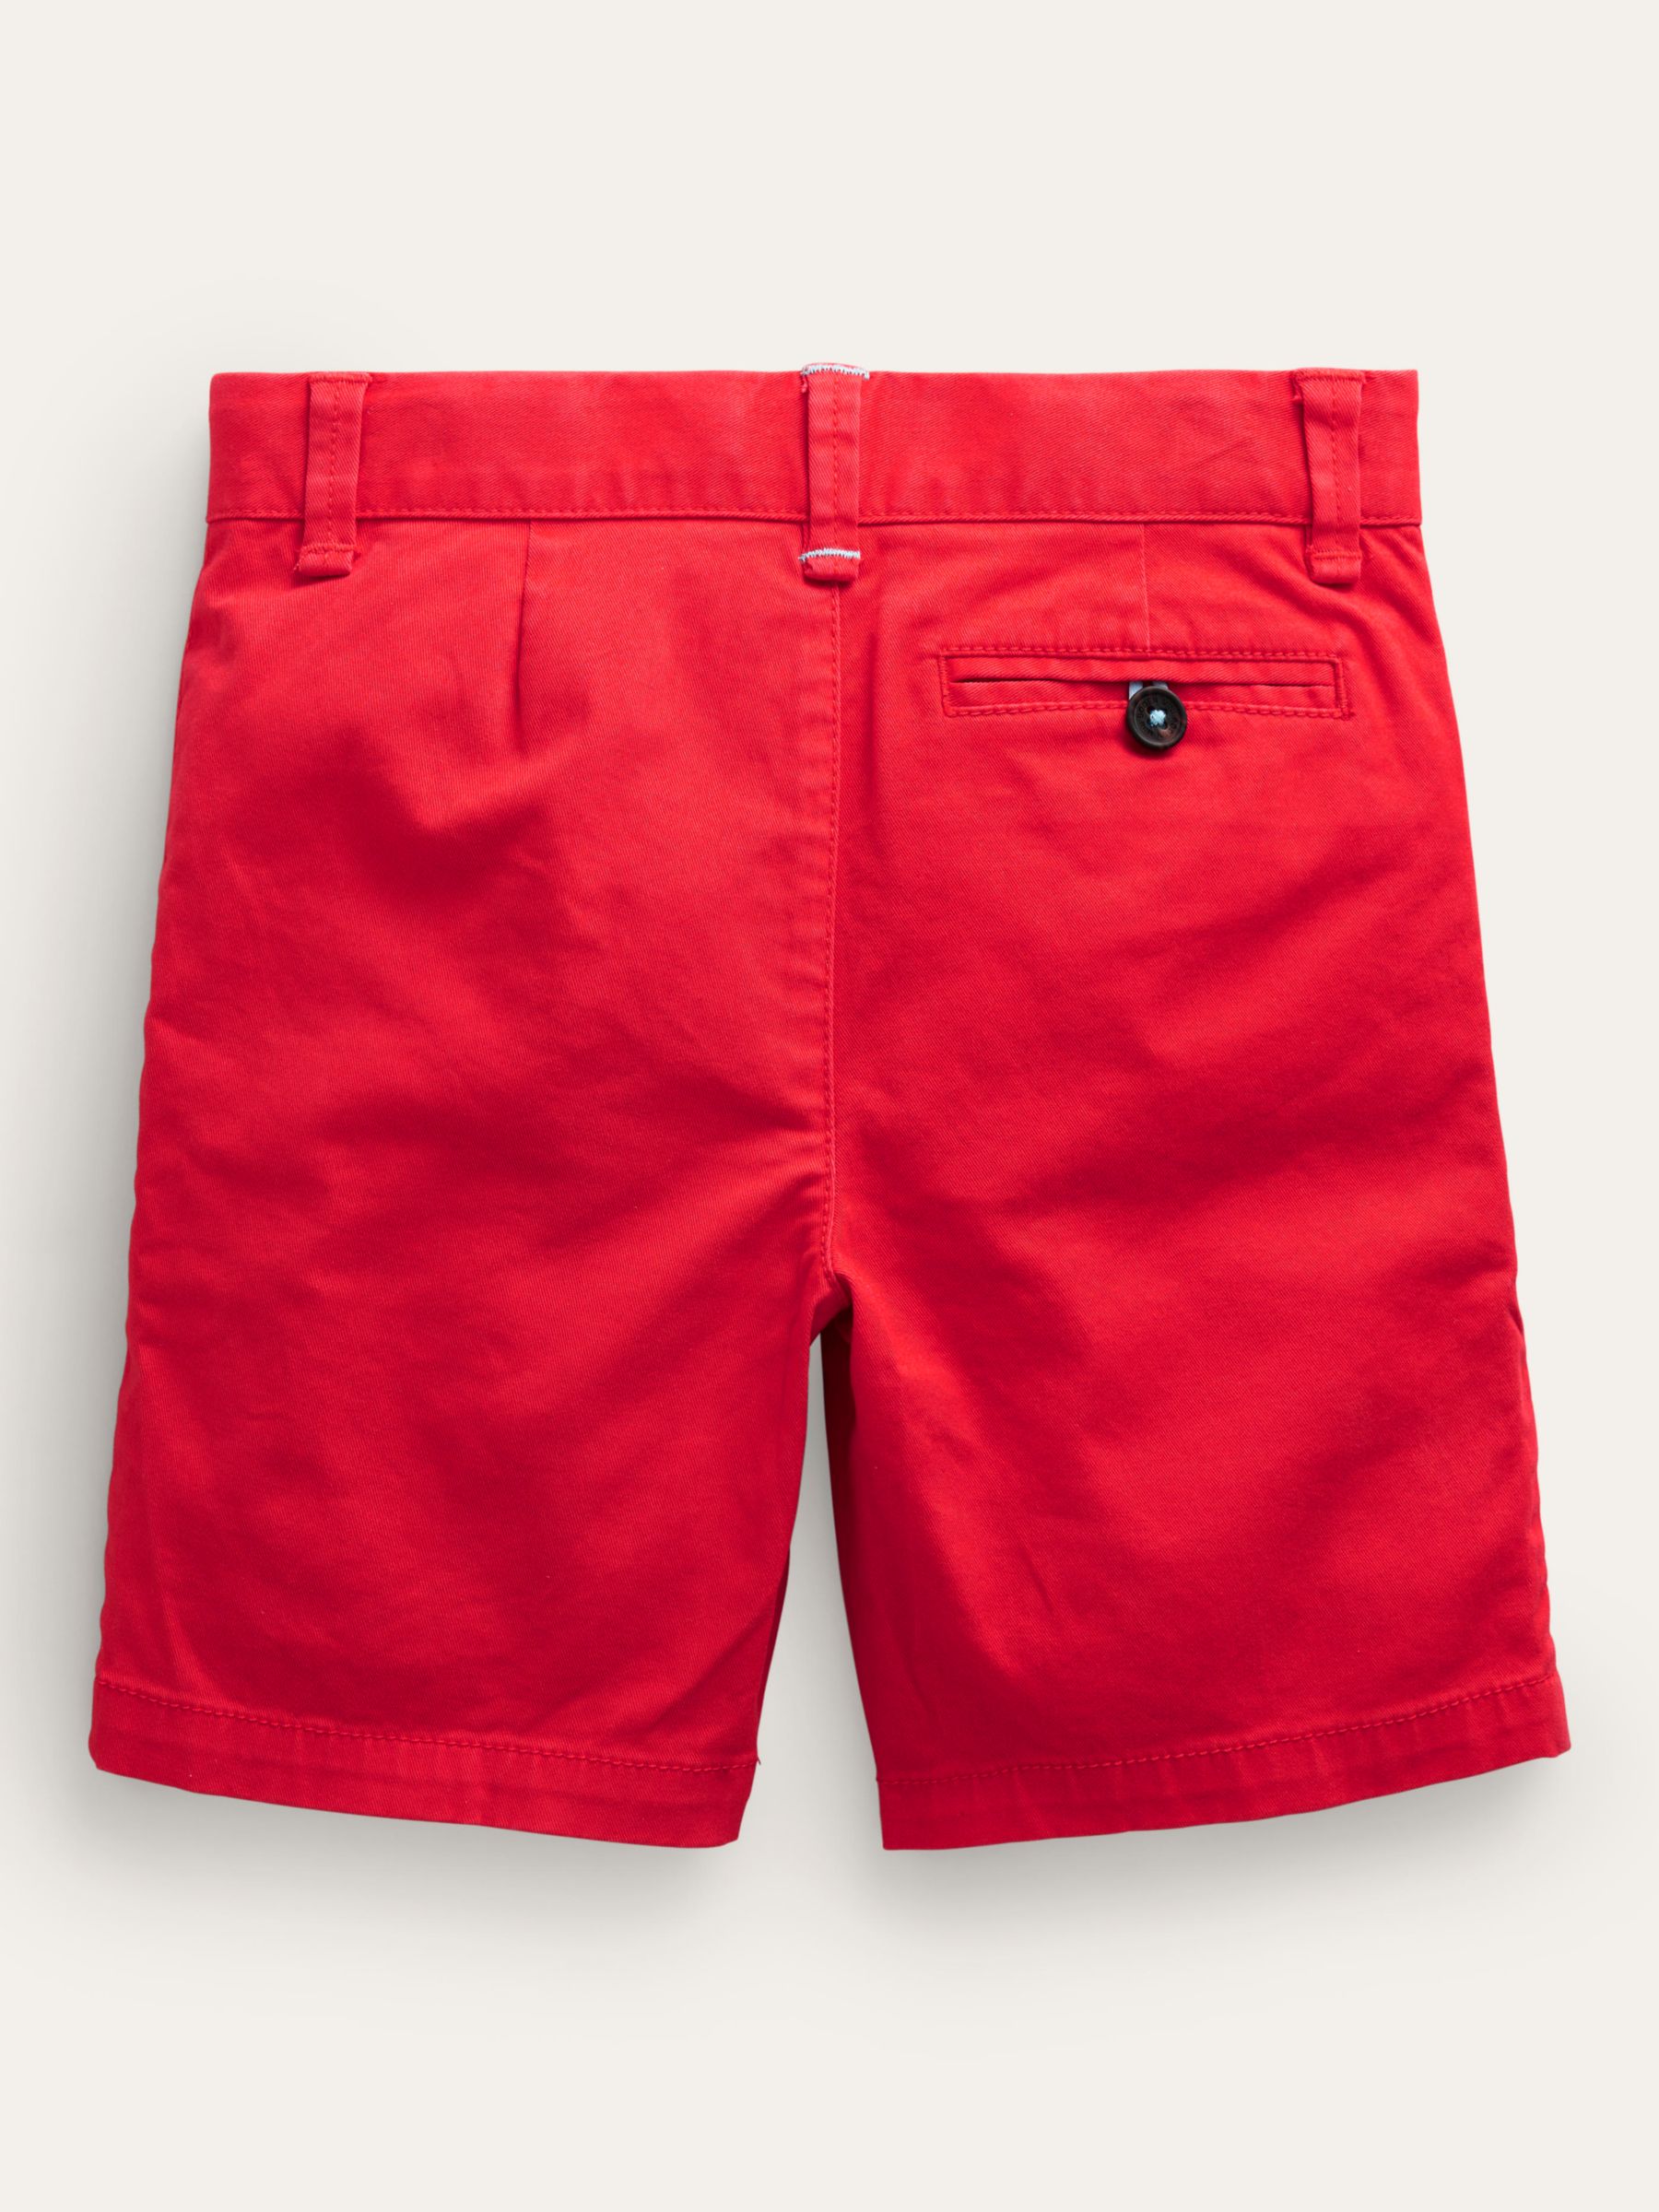 Mini Boden Kids' Classic Chino Shorts, Jam Red, 3 years